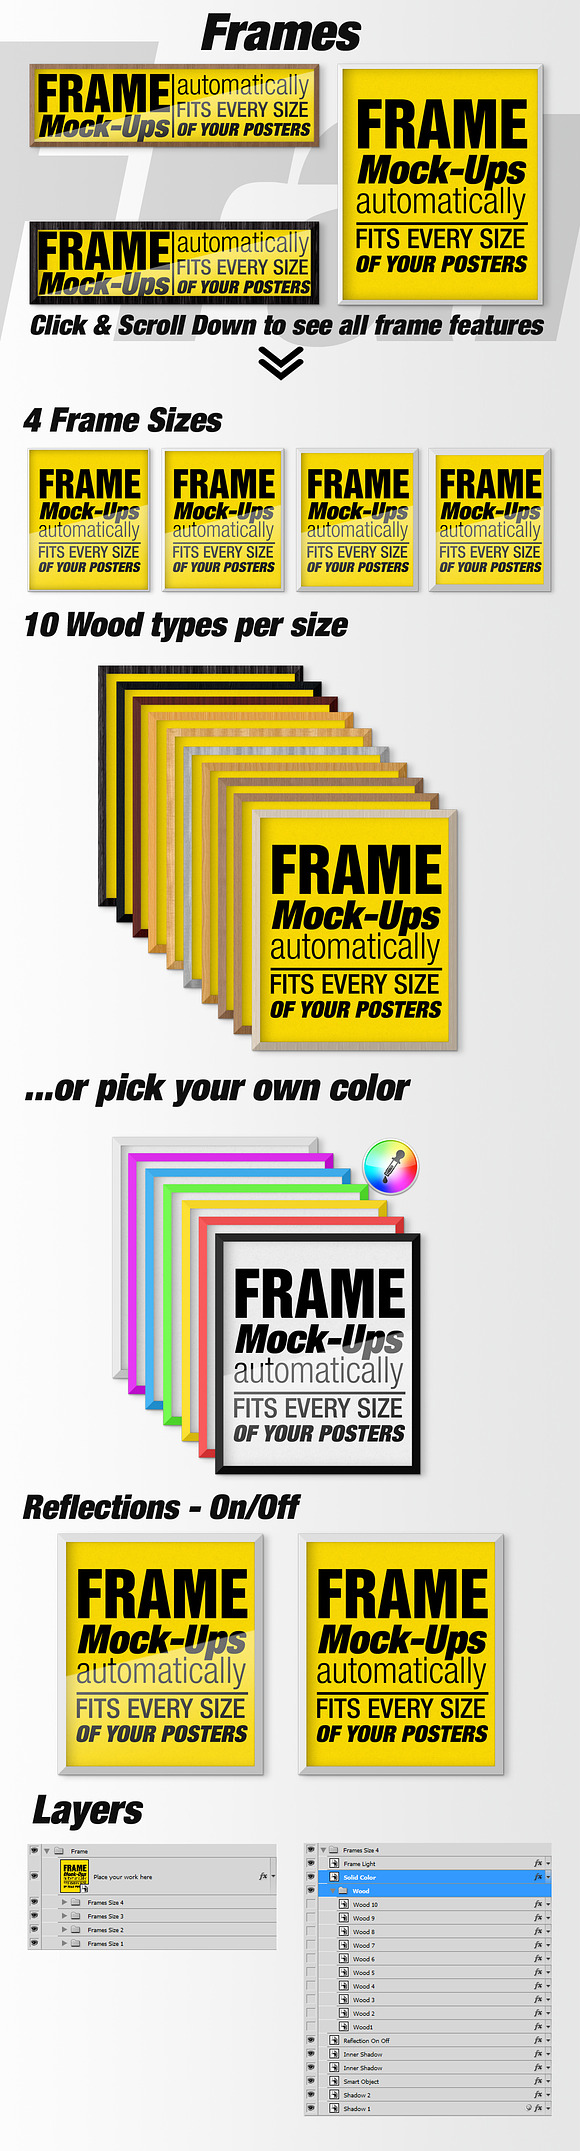 Canvas Mockups - Frames Mockups v 26 in Print Mockups - product preview 5